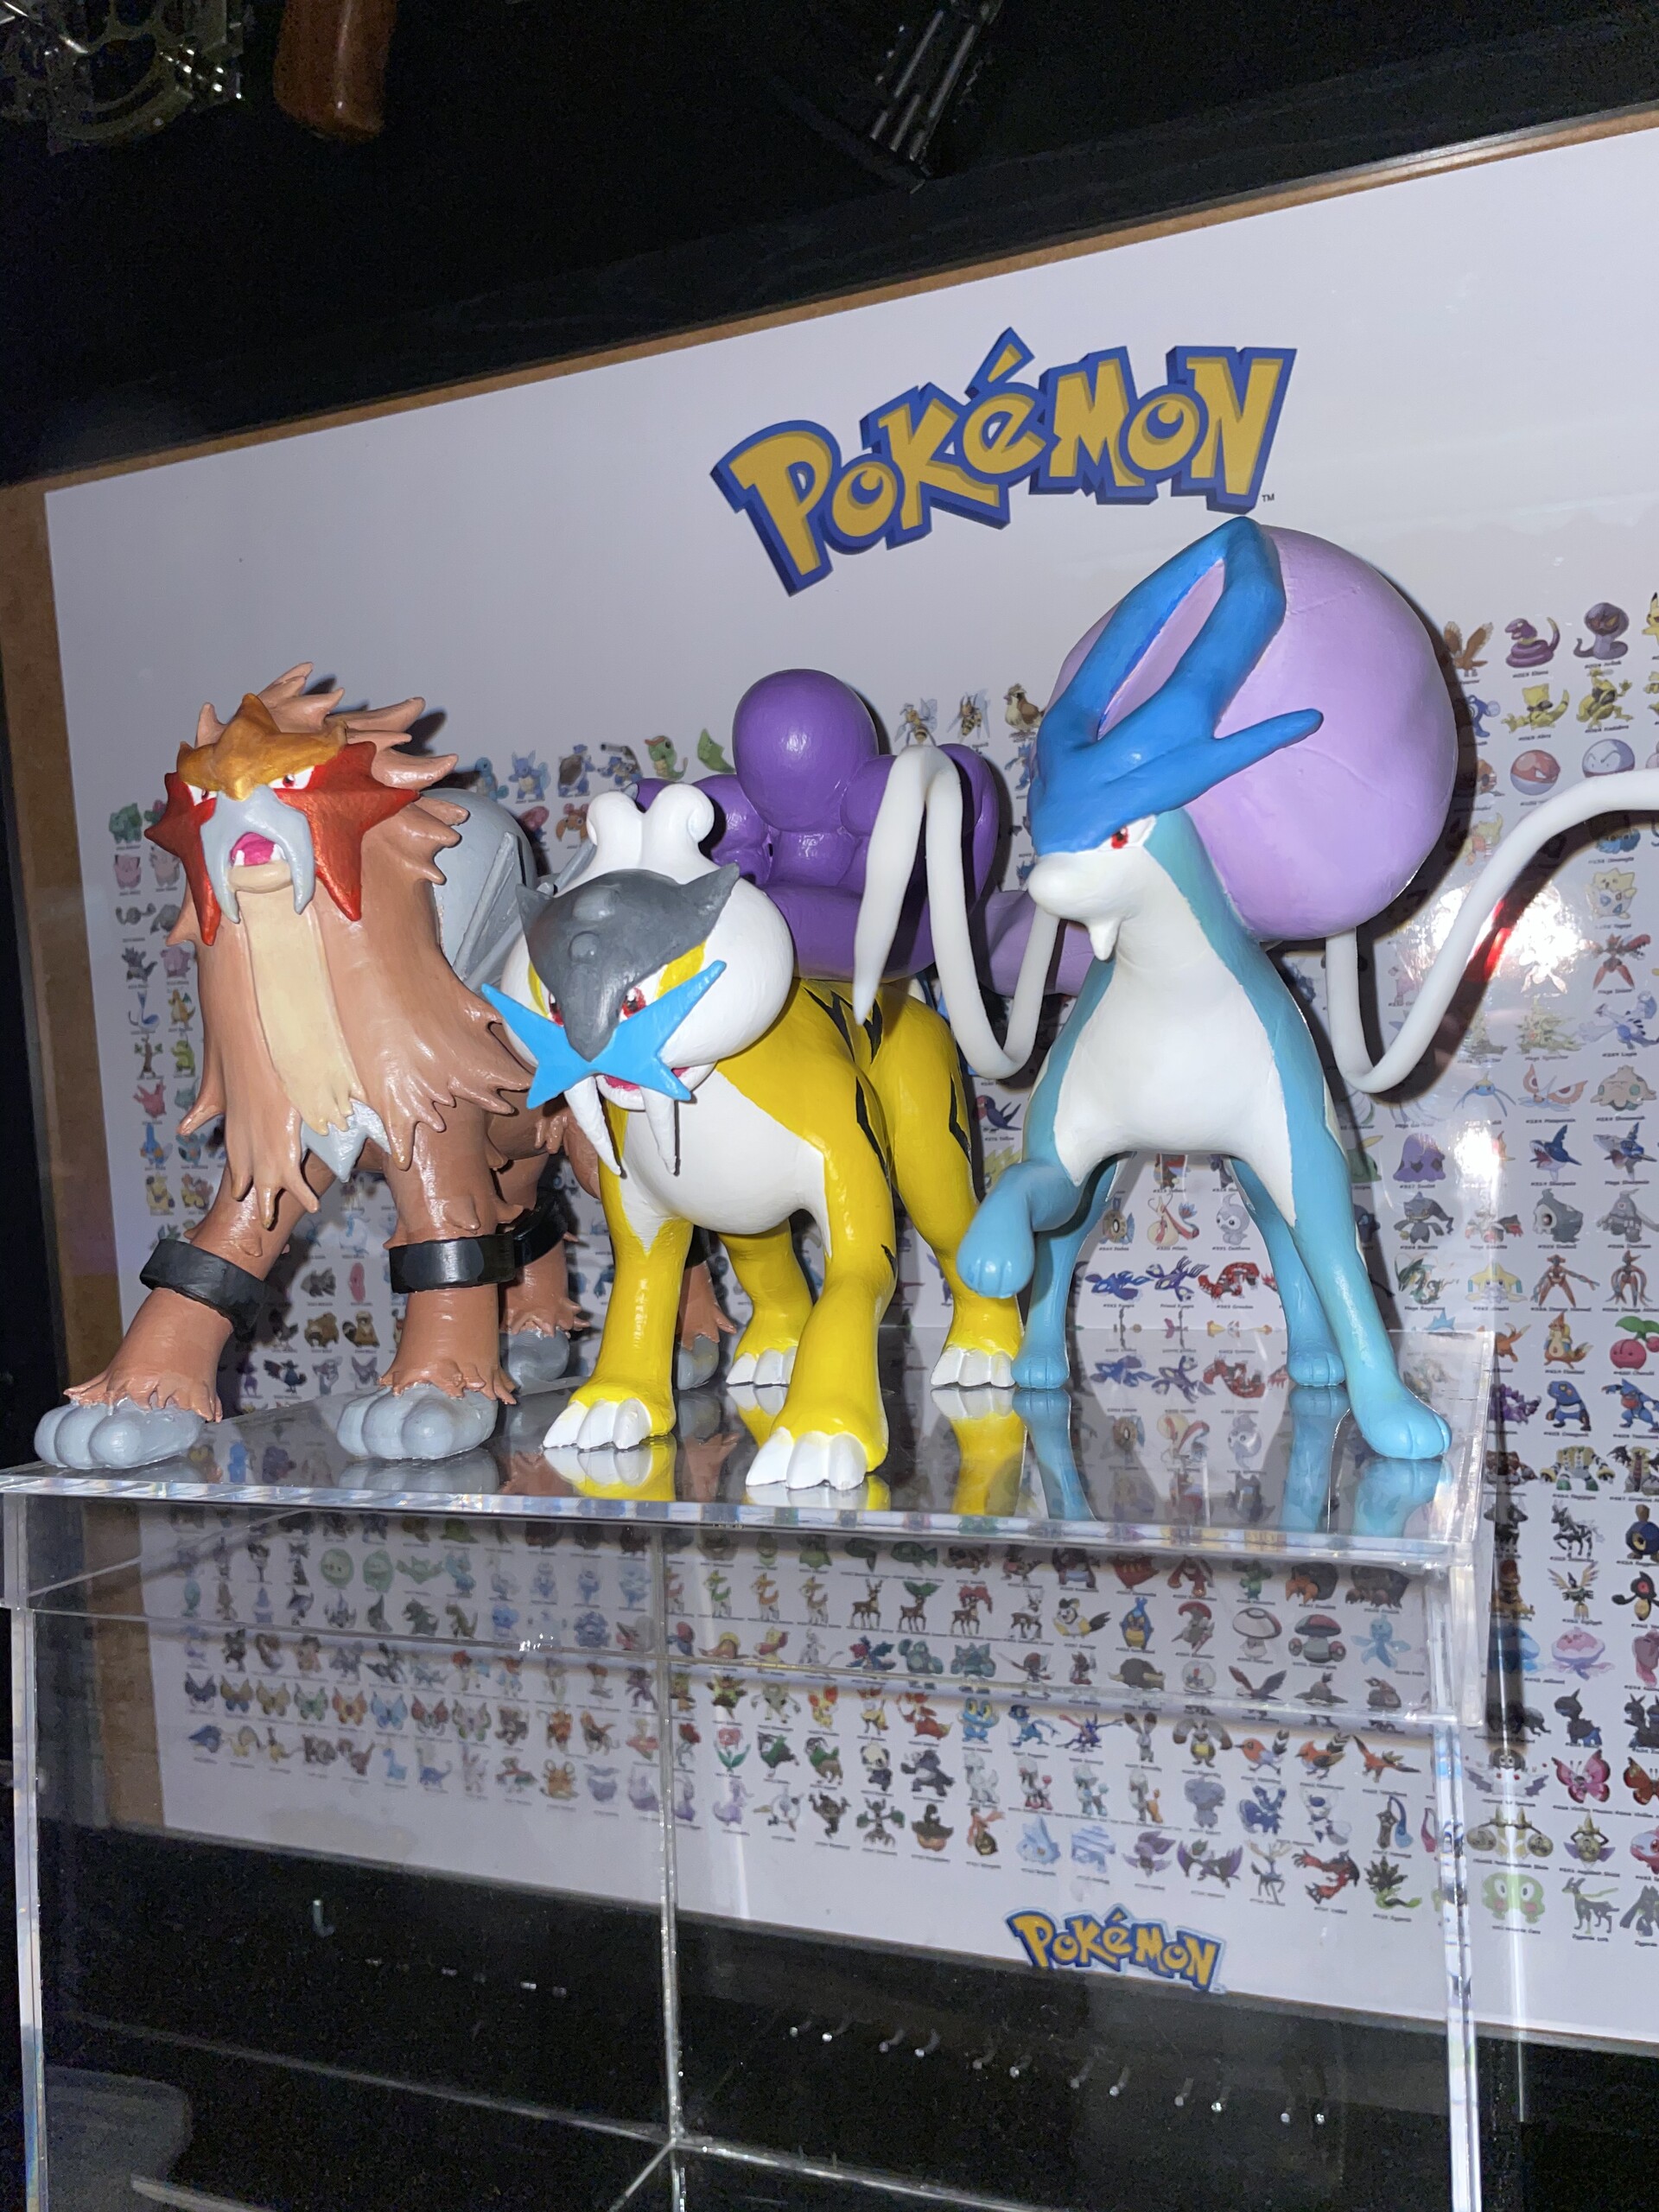 3D print Pokémon Raikou Entei Suicune 1/20 10cm model Toy GK customize  colour Three sacred model Pokemon - AliExpress